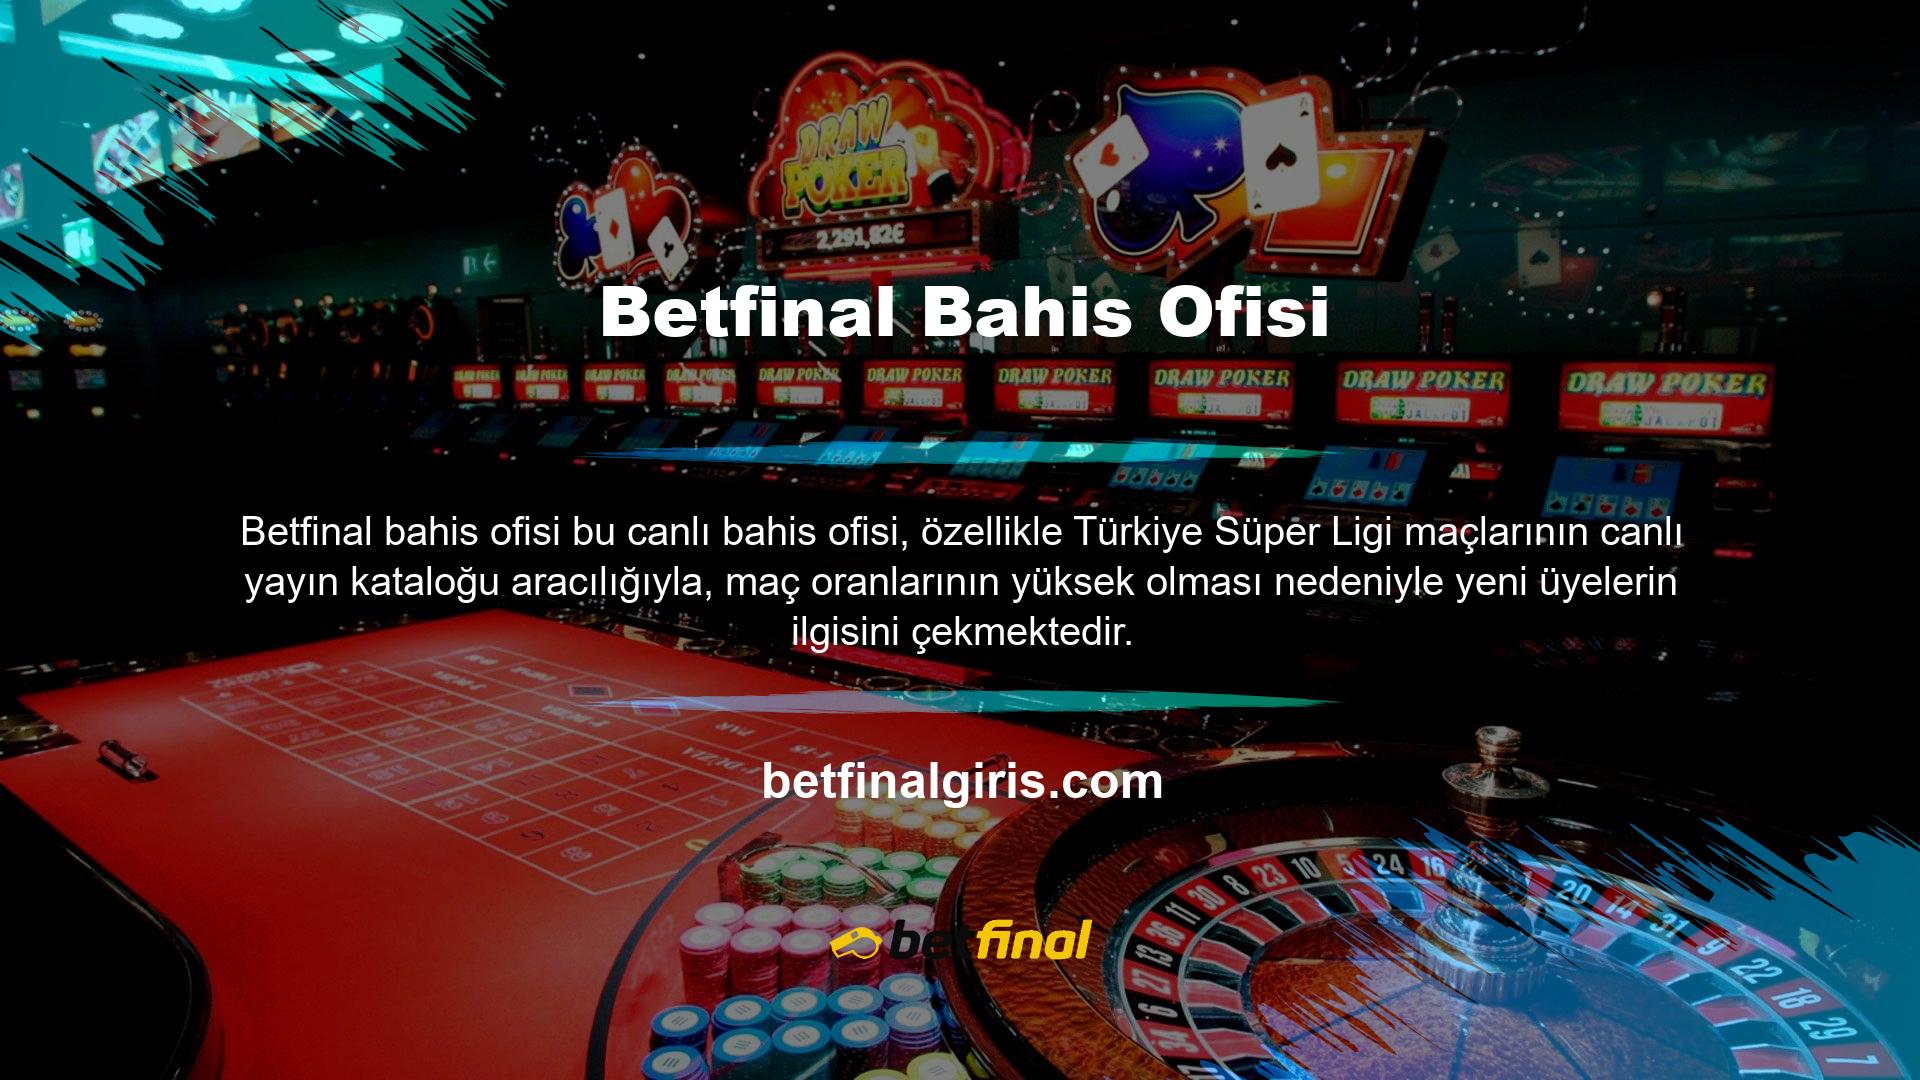 Site ayrıca bonuslar ve canlı casino oyunları sunarak yeni üyelerin ilgisini çekiyor